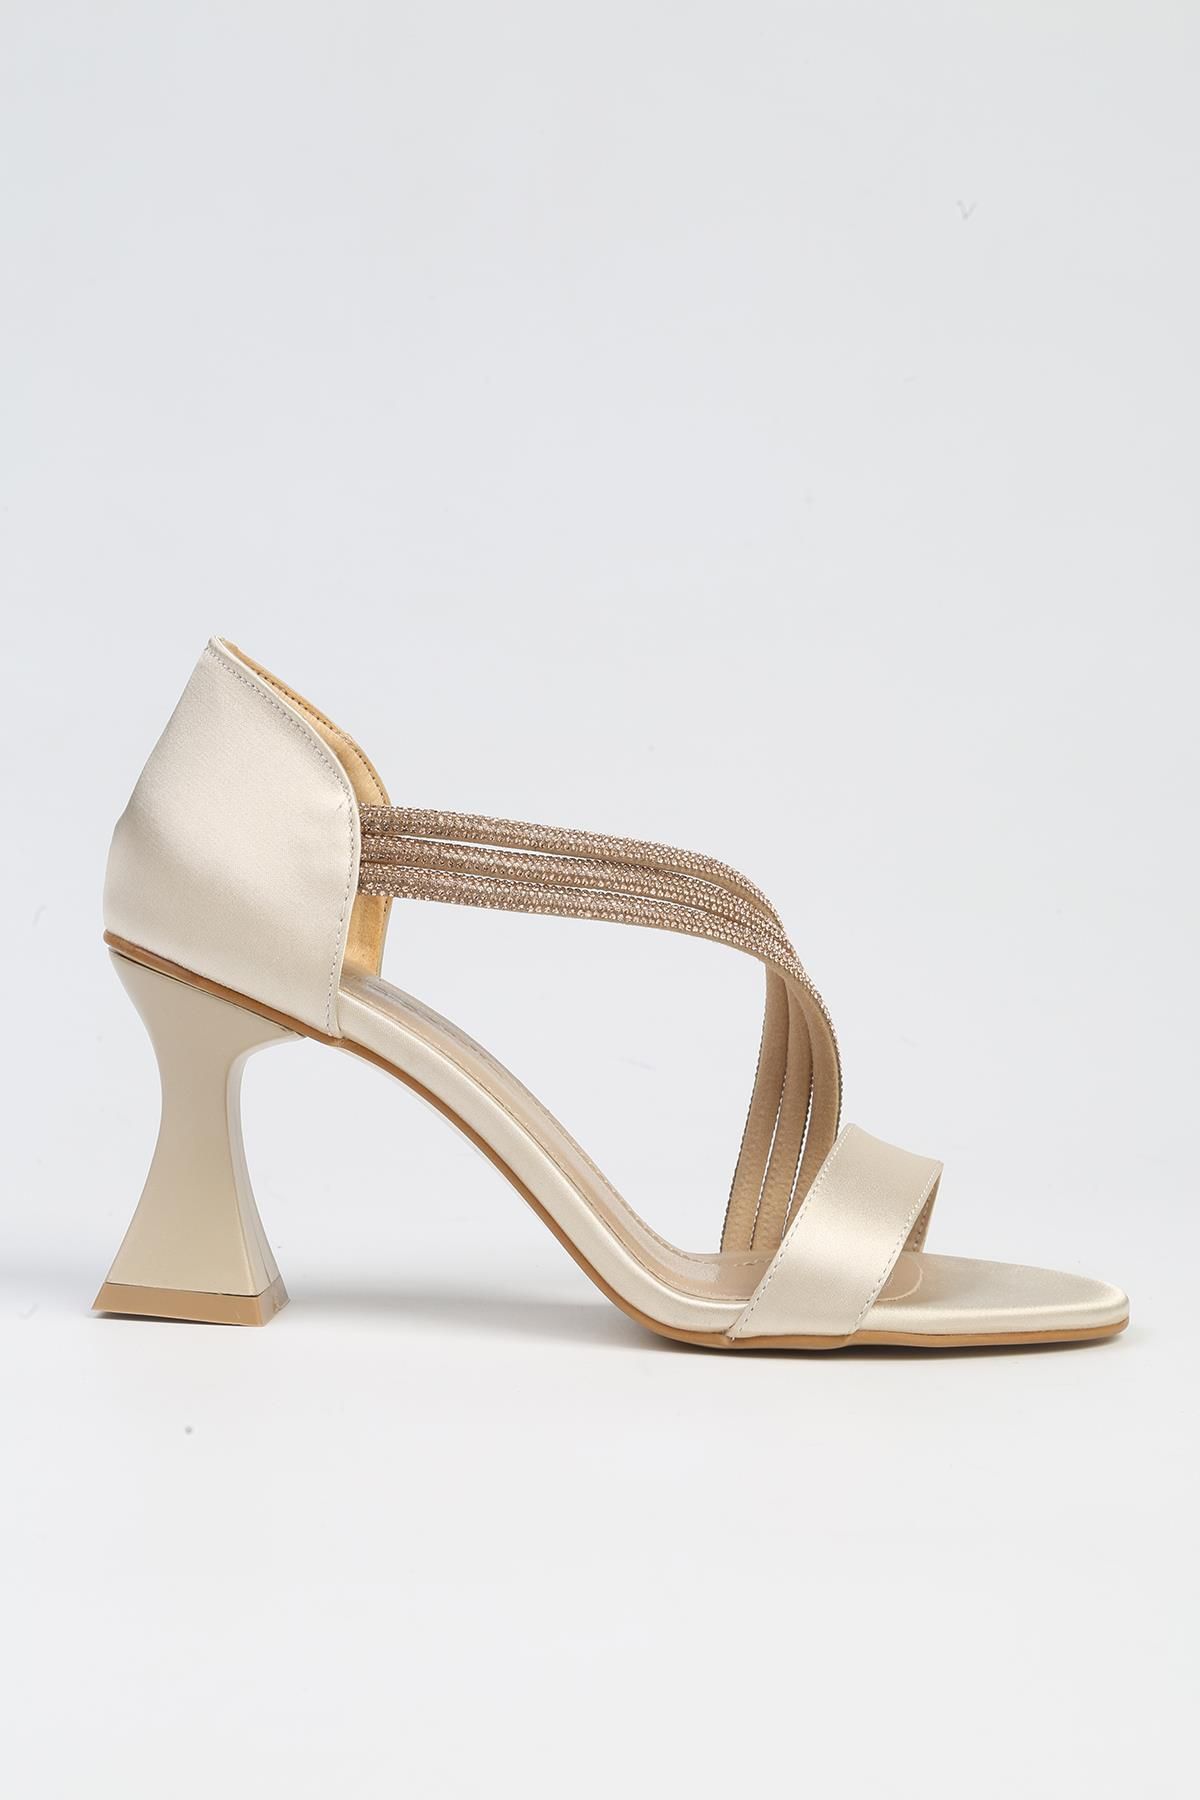 Pierre Cardin ® | PC-53009- 3691 Bej-Kadın Topuklu Ayakkabı